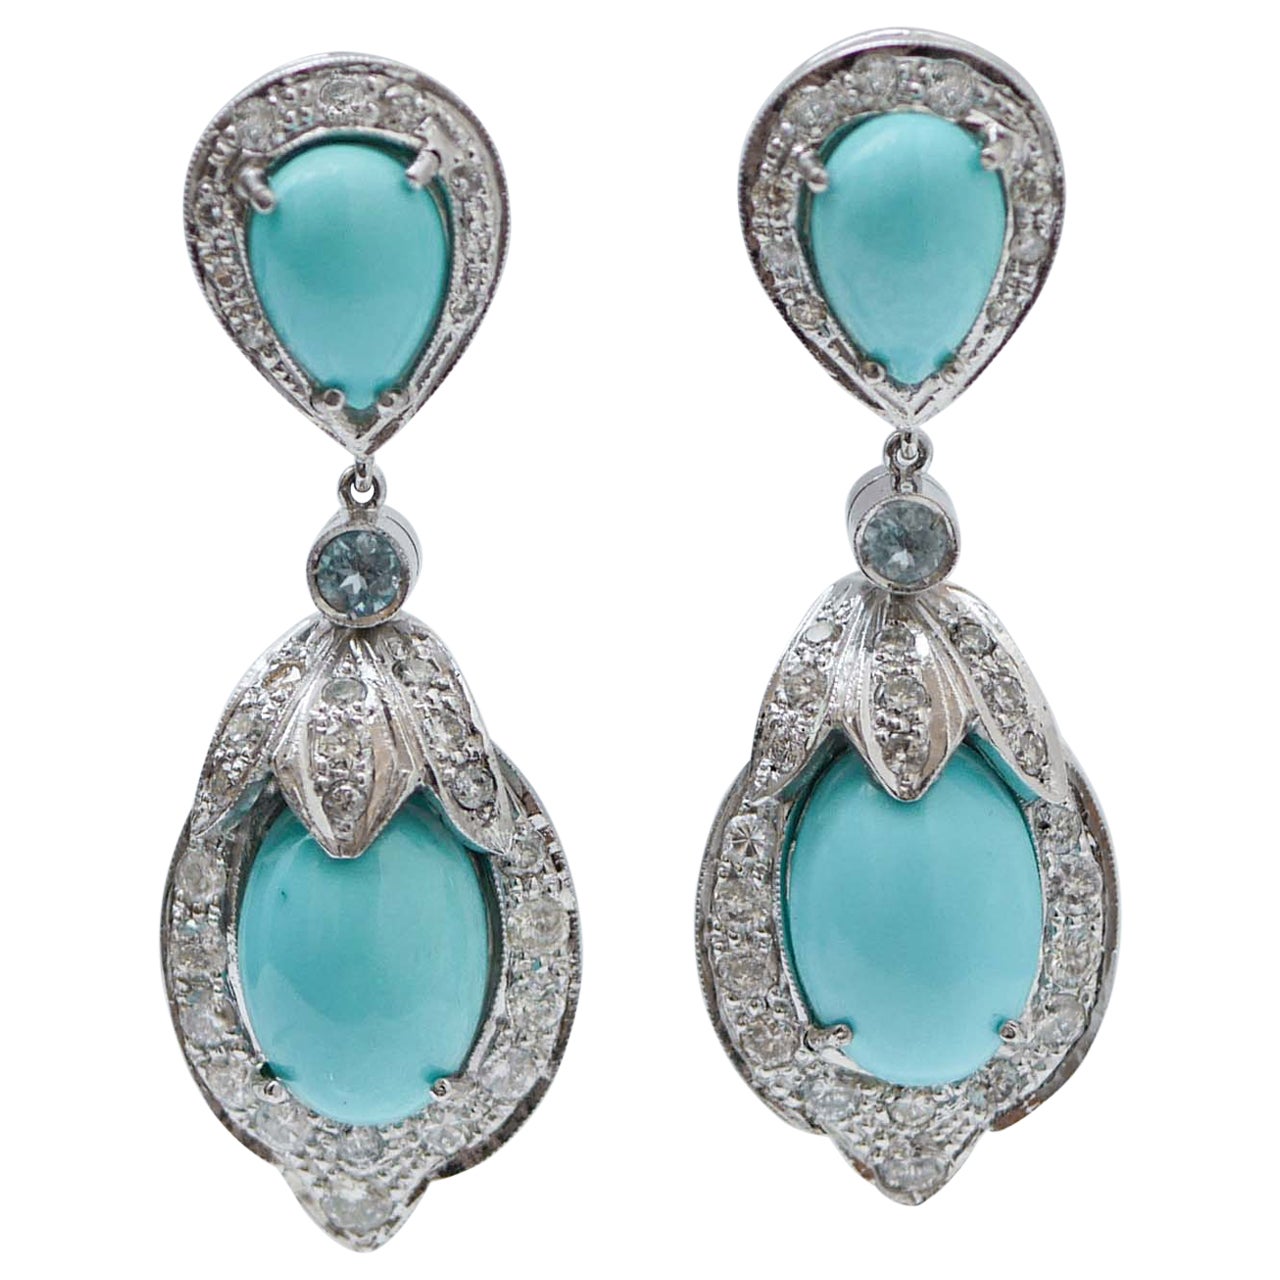 Turquoise, Aquamarine Colour Topazs, Diamonds, Platinum Earrings.